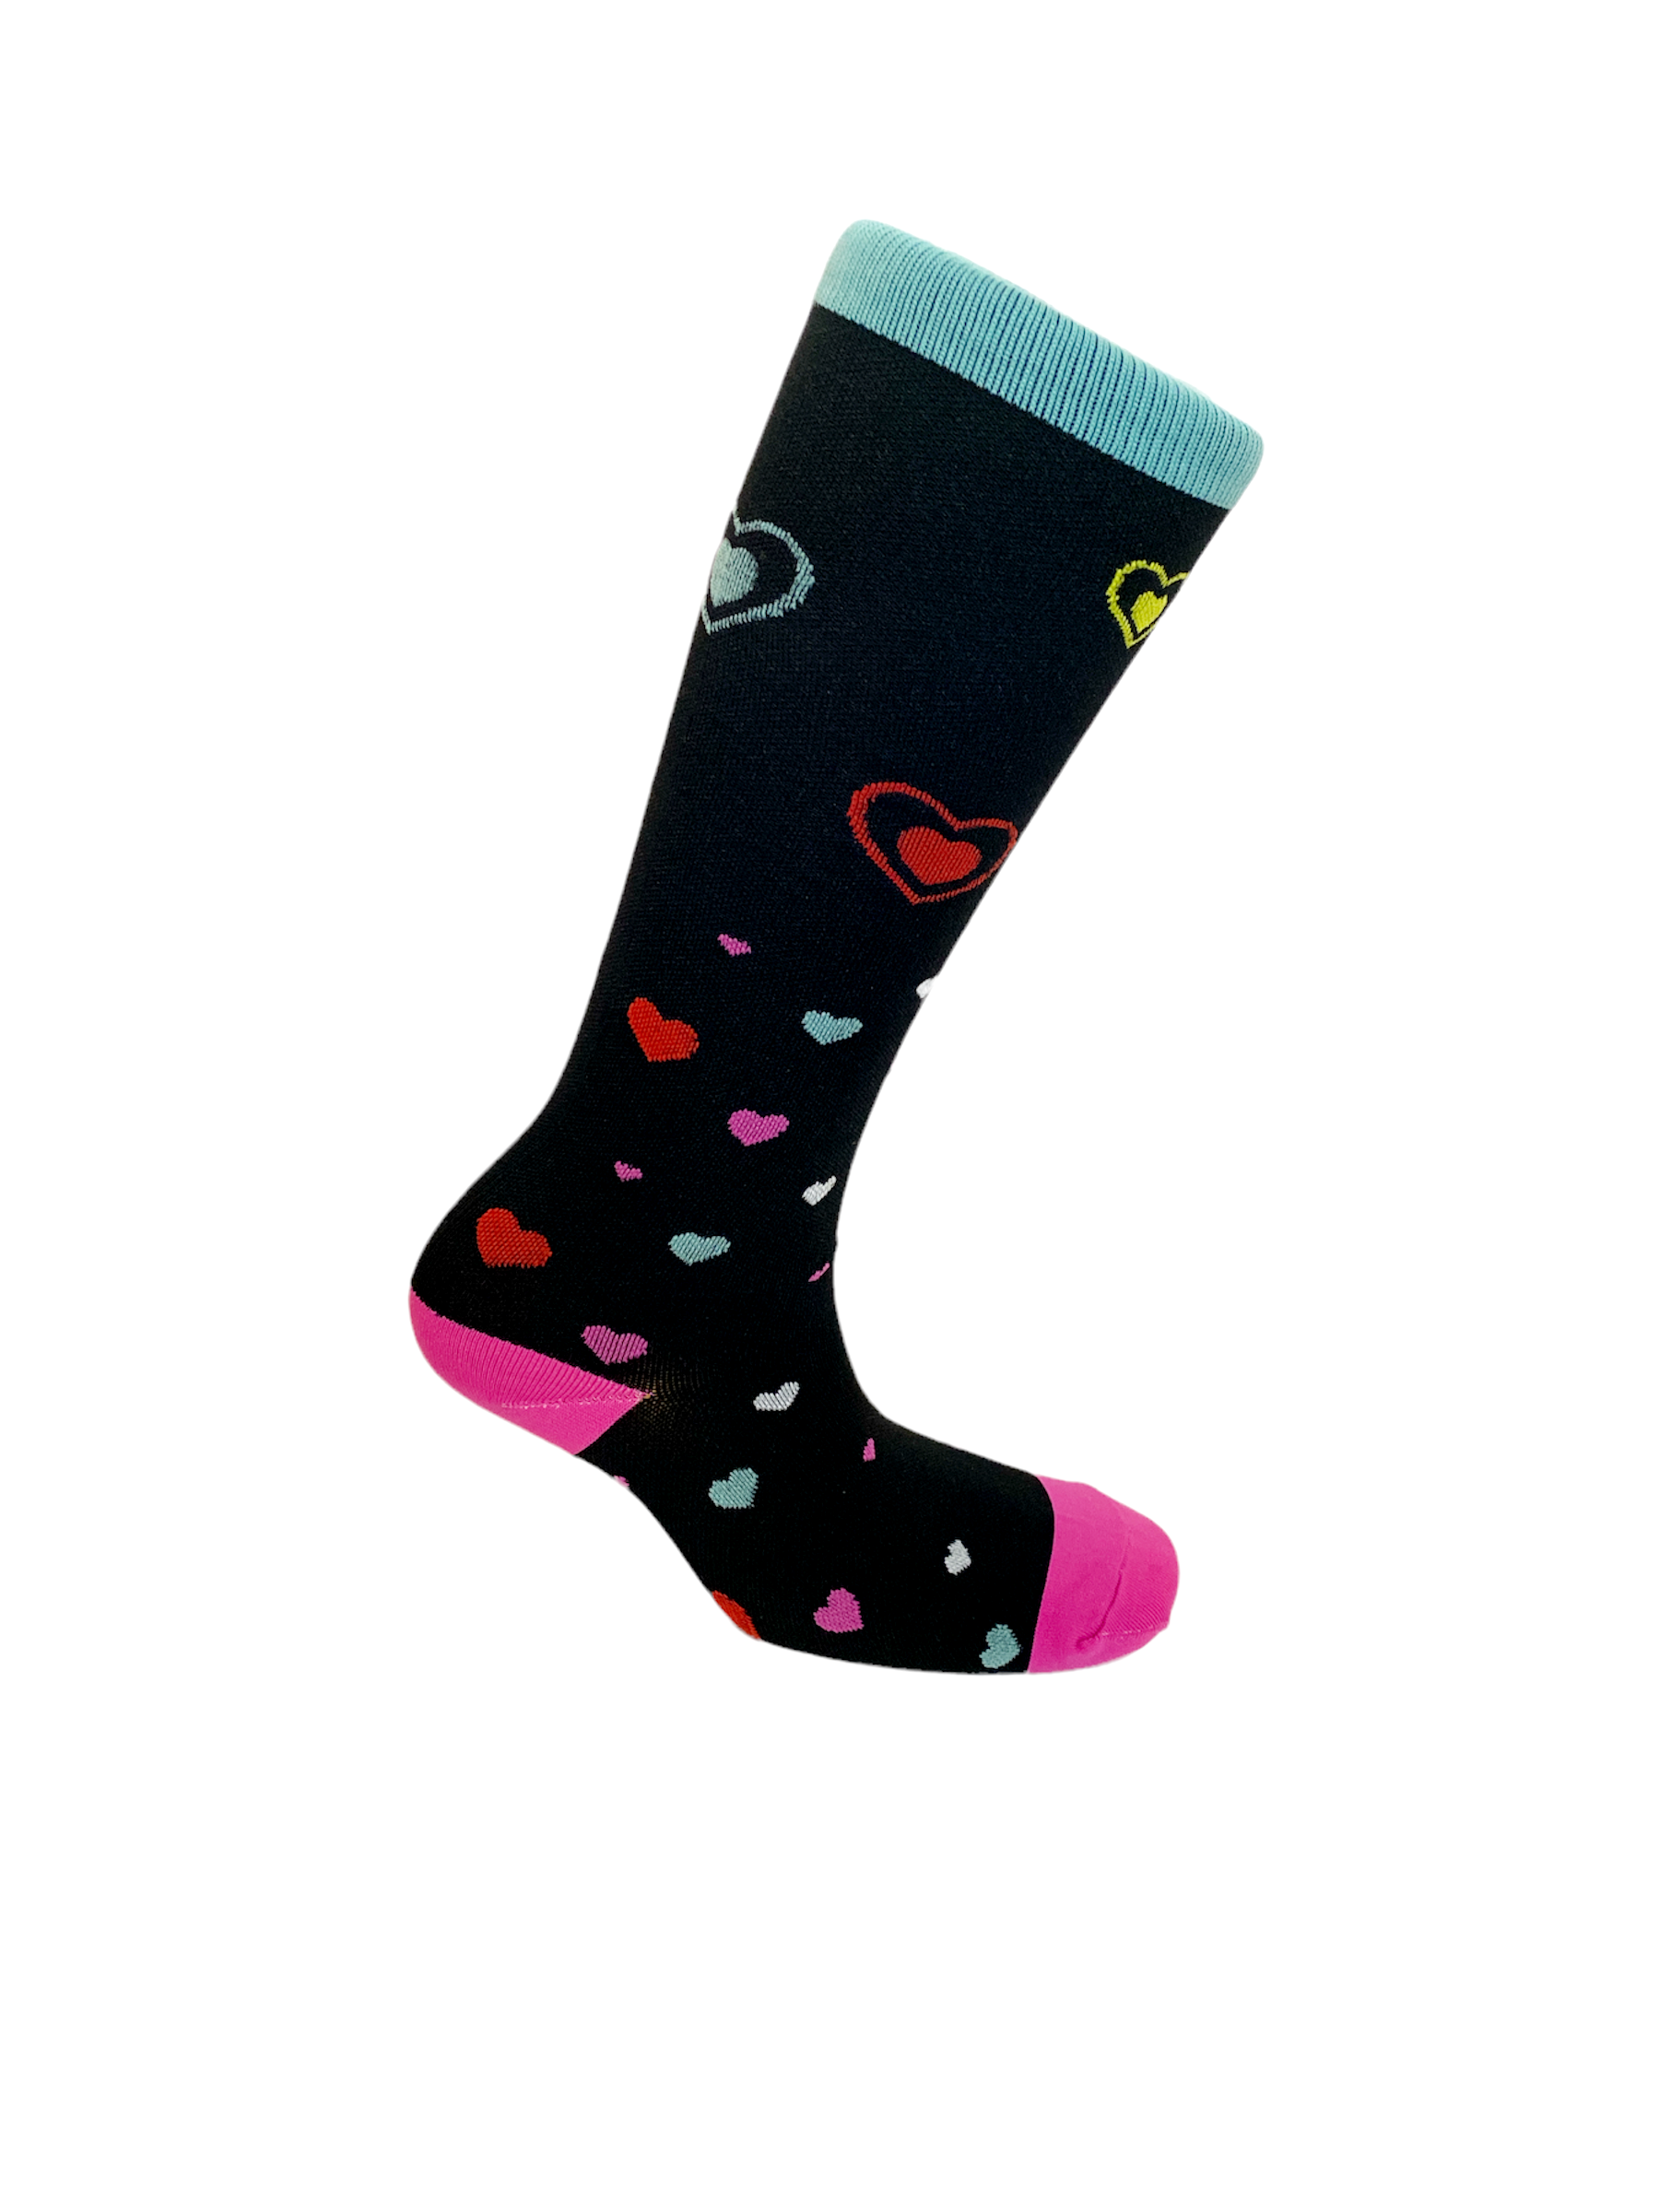 Medias de Compresion Mediana - Zipper Socks – Tienda Medica Oxisur